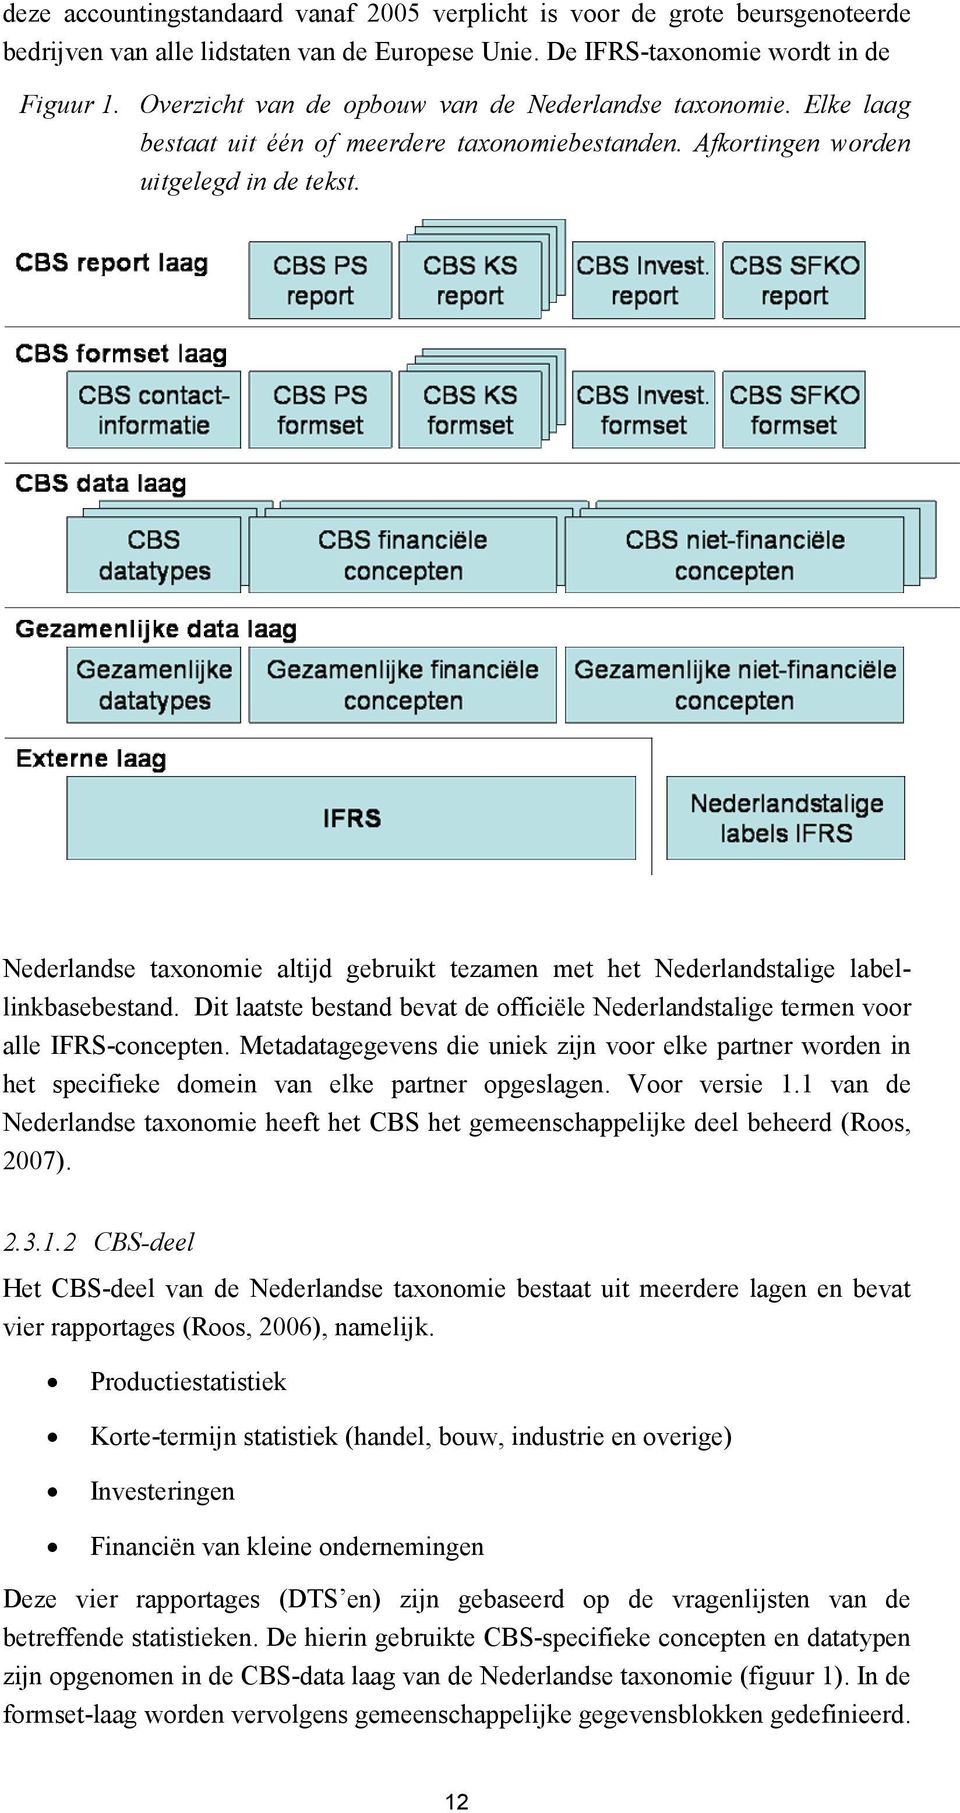 Nederlandse taxonomie altijd gebruikt tezamen met het Nederlandstalige labellinkbasebestand. Dit laatste bestand bevat de officiële Nederlandstalige termen voor alle IFRS-concepten.